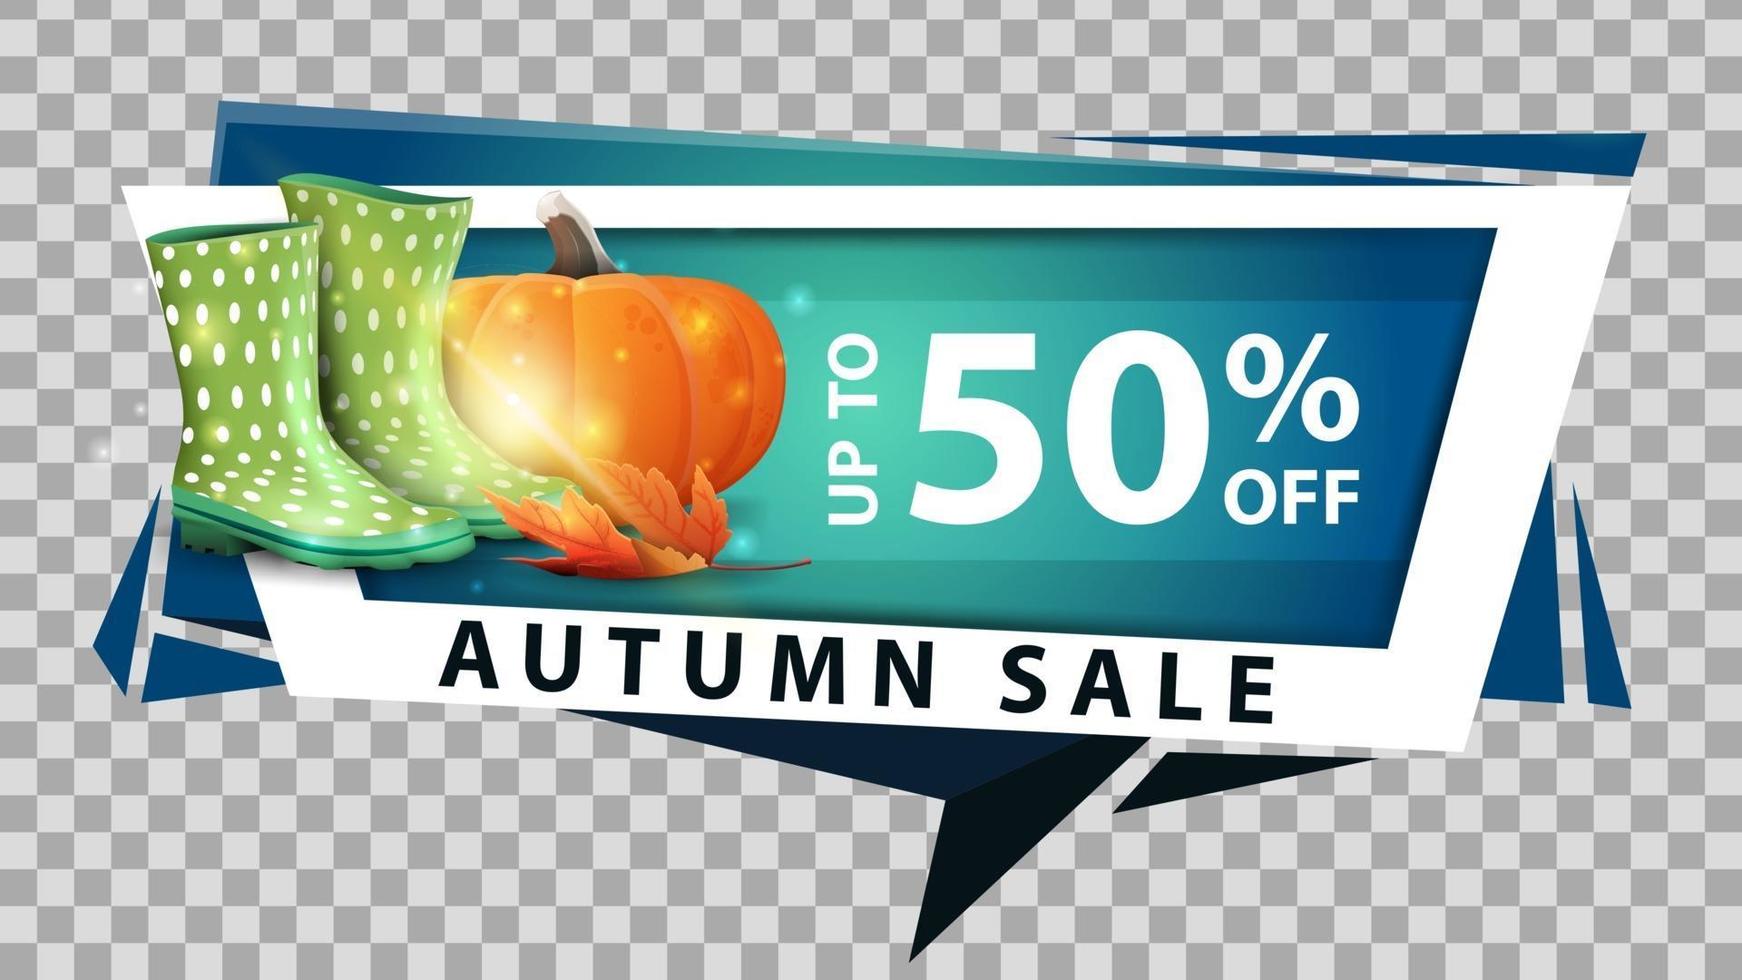 venda de outono, banner da web de desconto em estilo geométrico vetor